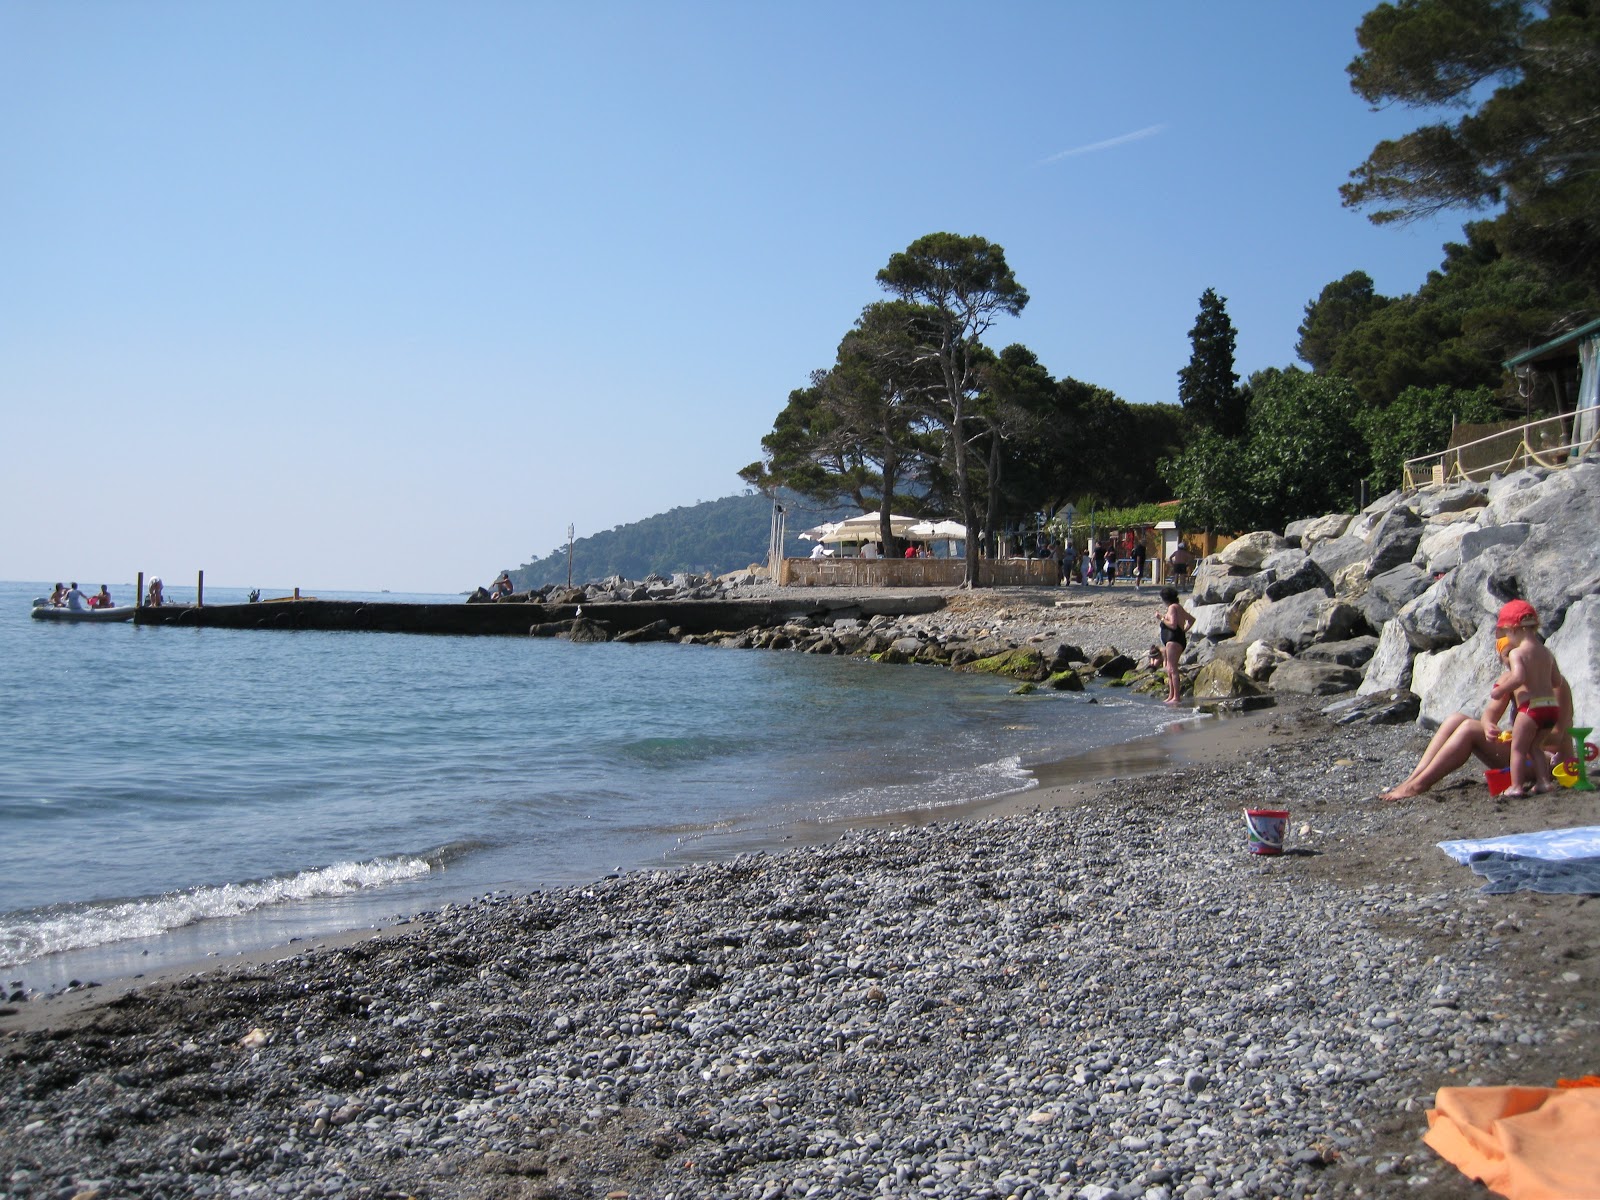 Fotografie cu Pozzale beach - locul popular printre cunoscătorii de relaxare